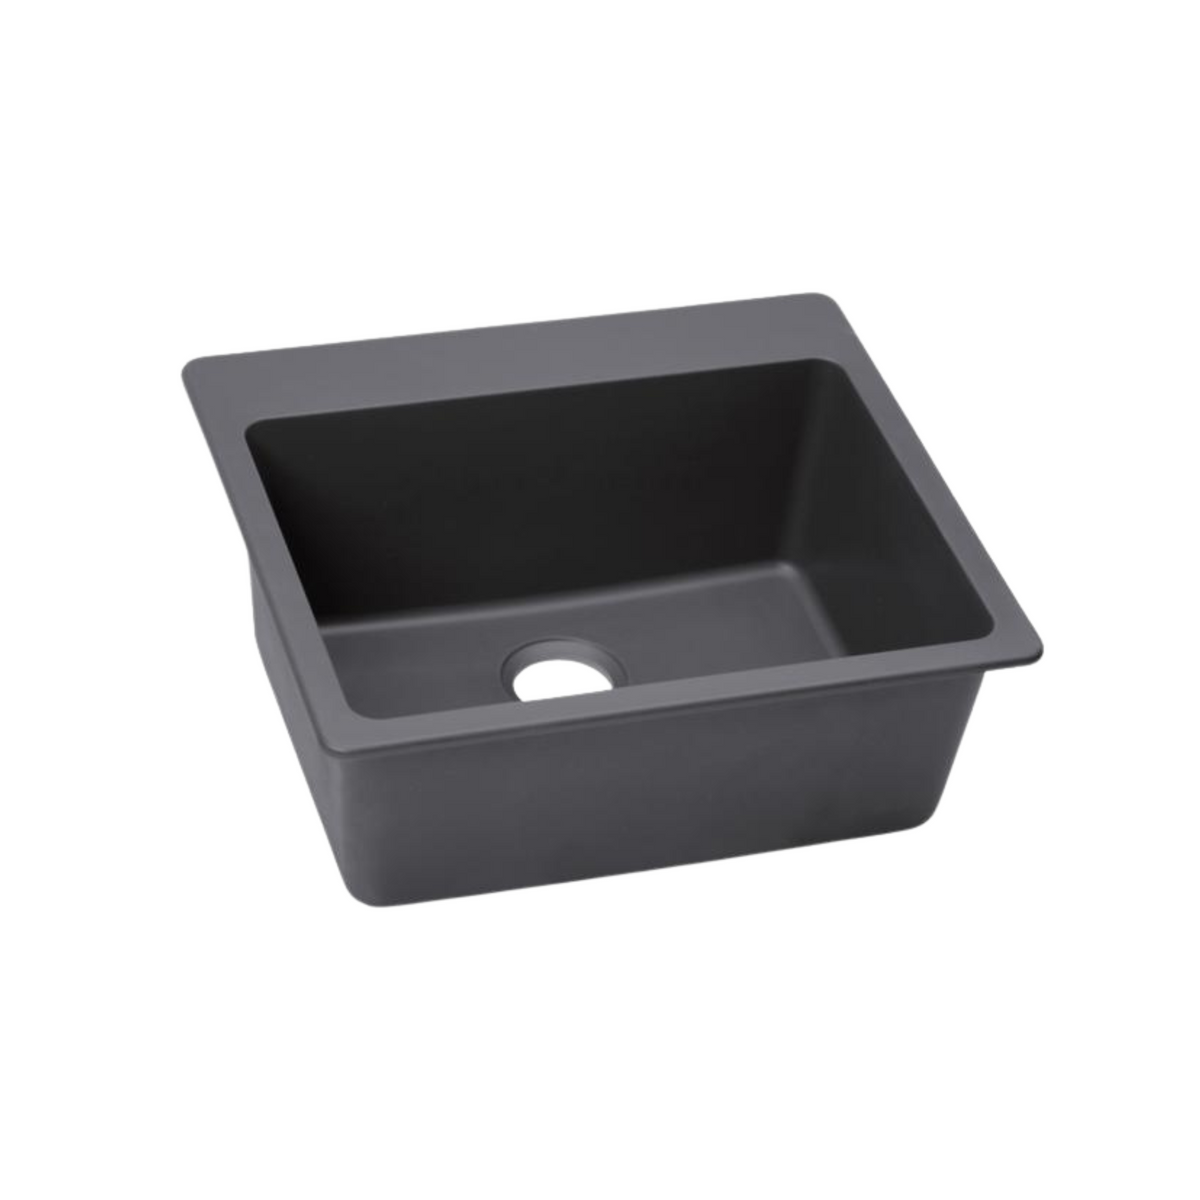 Elkay Quartz Luxe 25" x 22" x 9-1/2" Single Bowl Drop-in Sink Charcoal